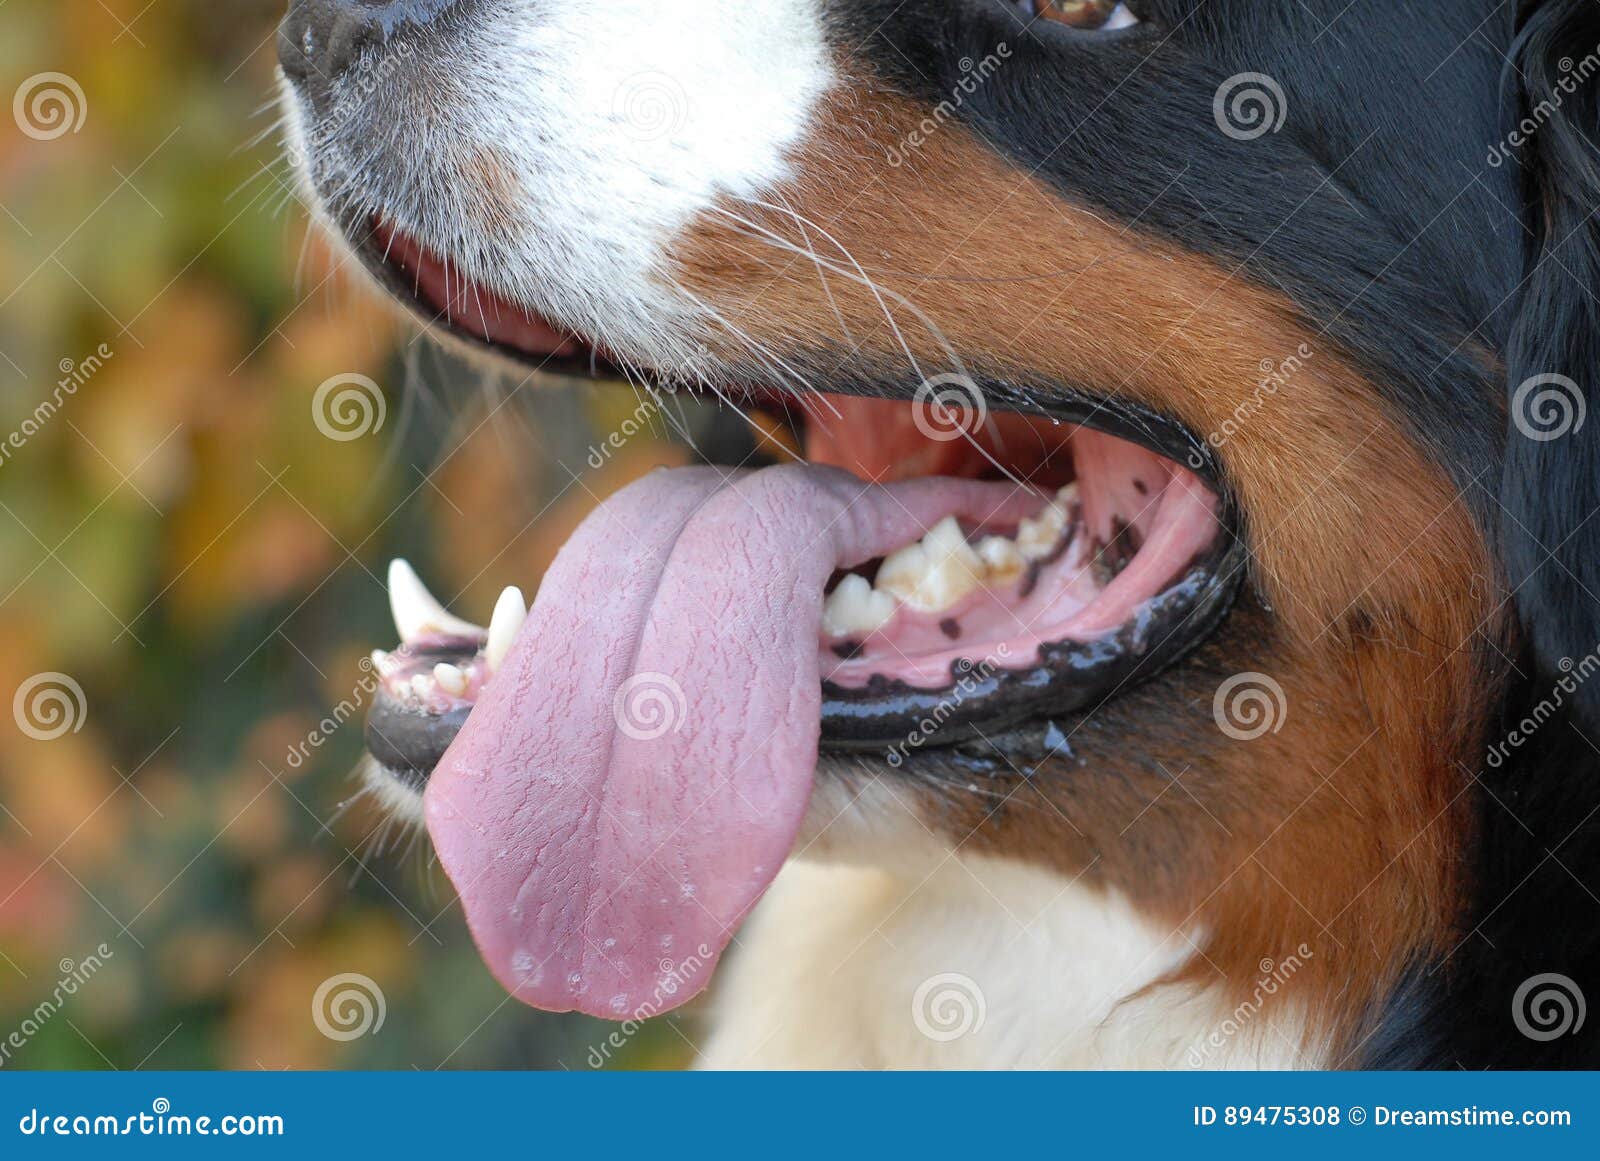 Высунула язык и тяжело дышит. Собака с высунутым языком. Собака дышит с открытым ртом. Собака дышит высунув язык. Иллюстрации щенок с высунутым языком.